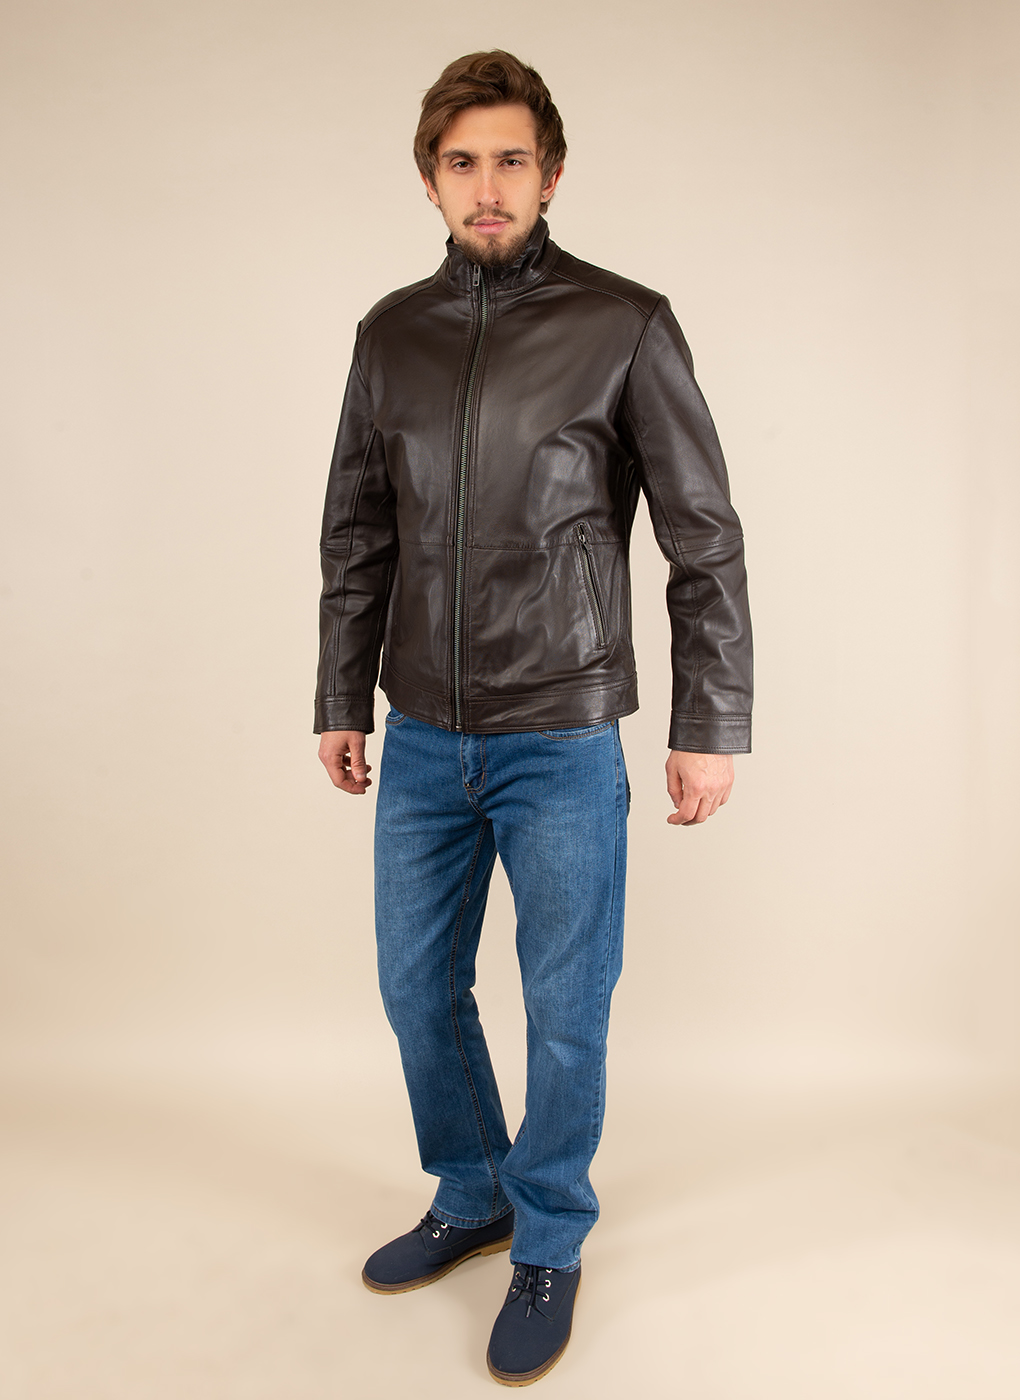 Кожаная куртка мужская Каляев 51795 коричневая 54 RU